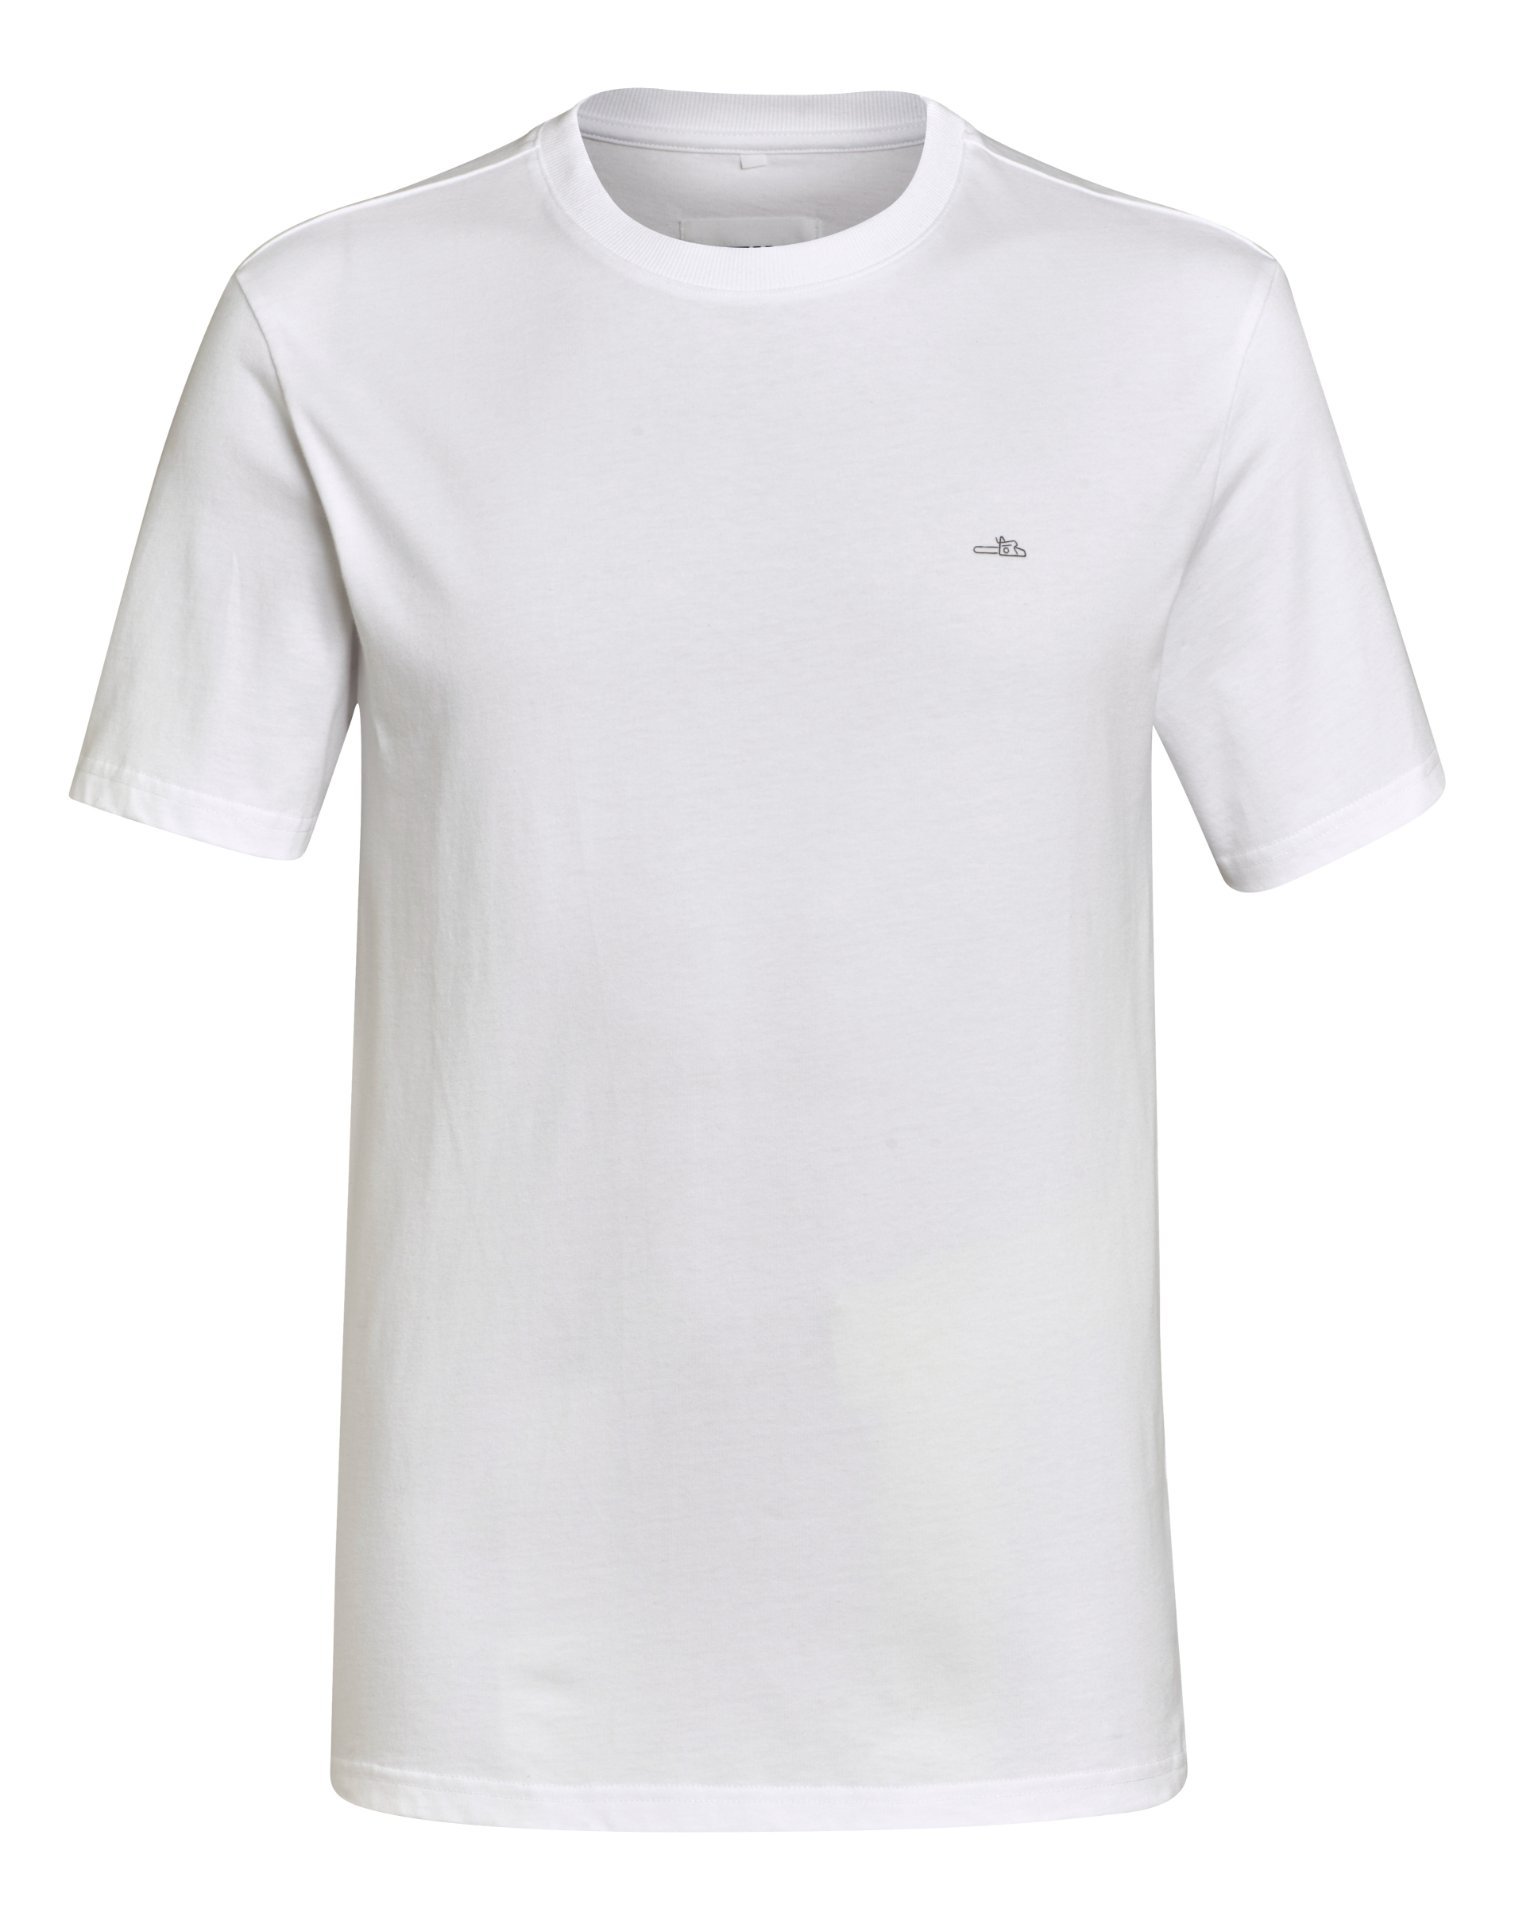 STIHL T-Shirt ICON weiß